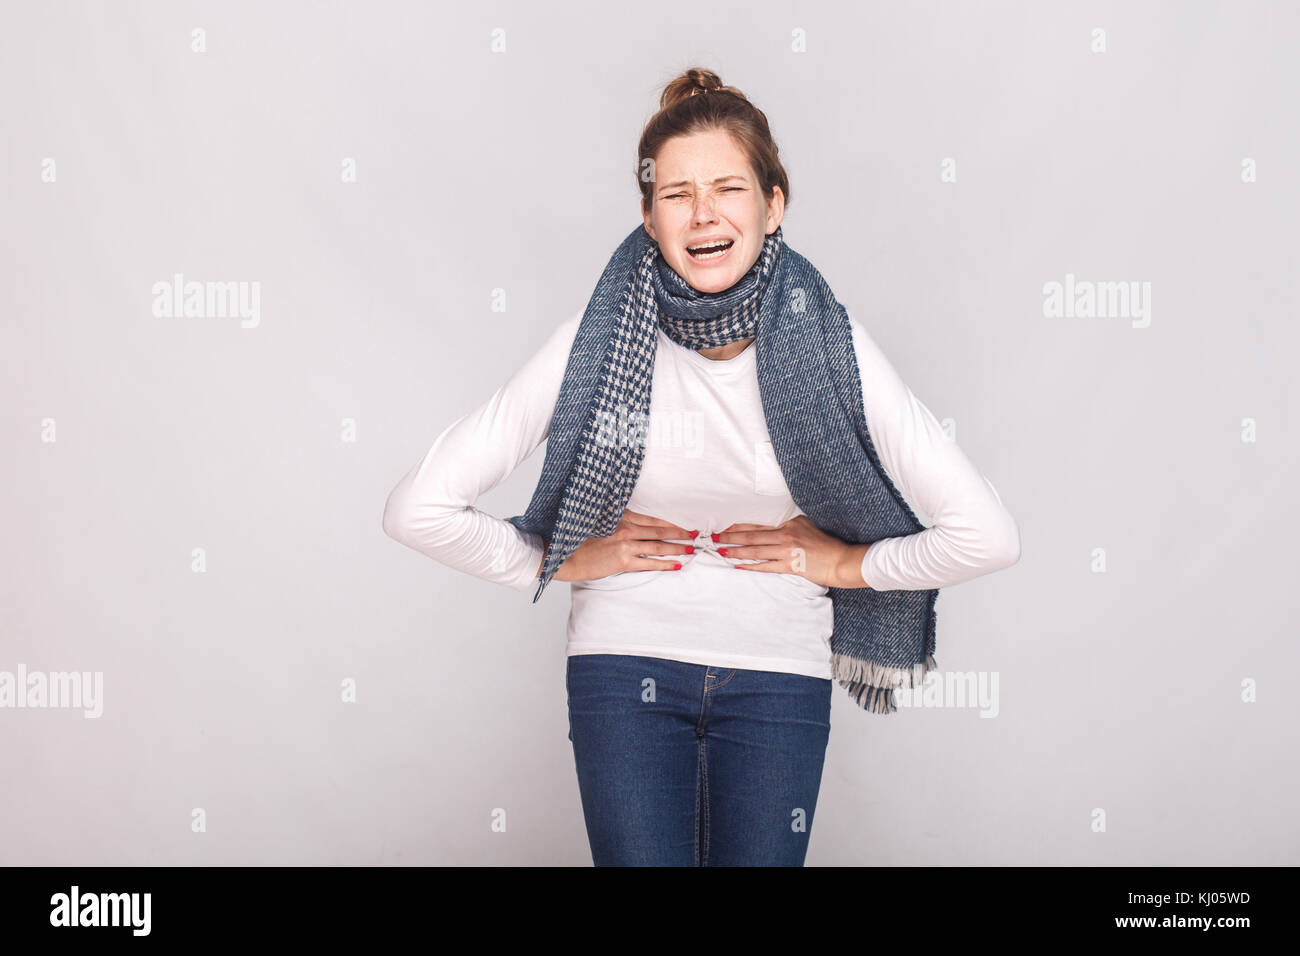 Periodi, mensile, mensili concetto. giovane donna hanno un stomaco. studio shot Foto Stock